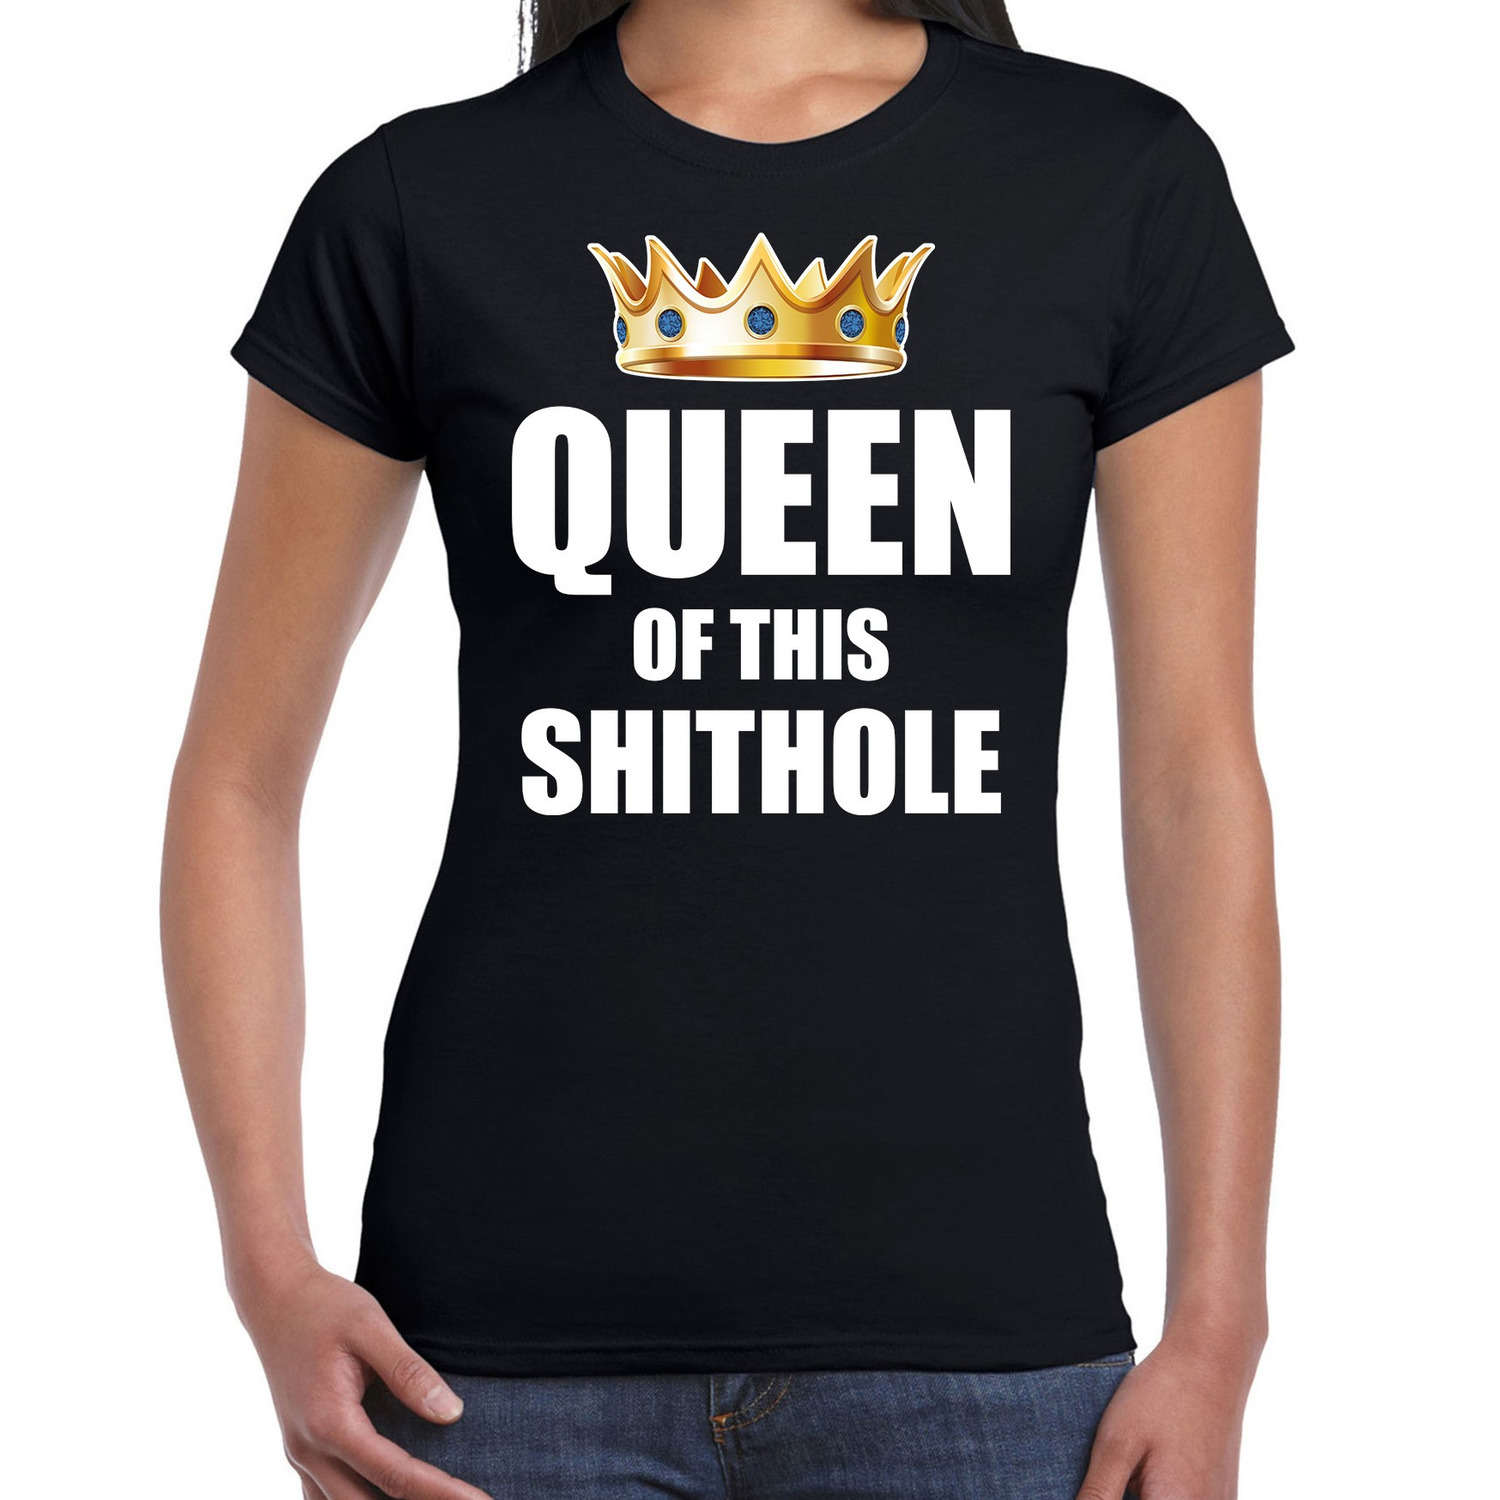 Koningsdag t-shirt Queen of this shit hole zwart voor dames